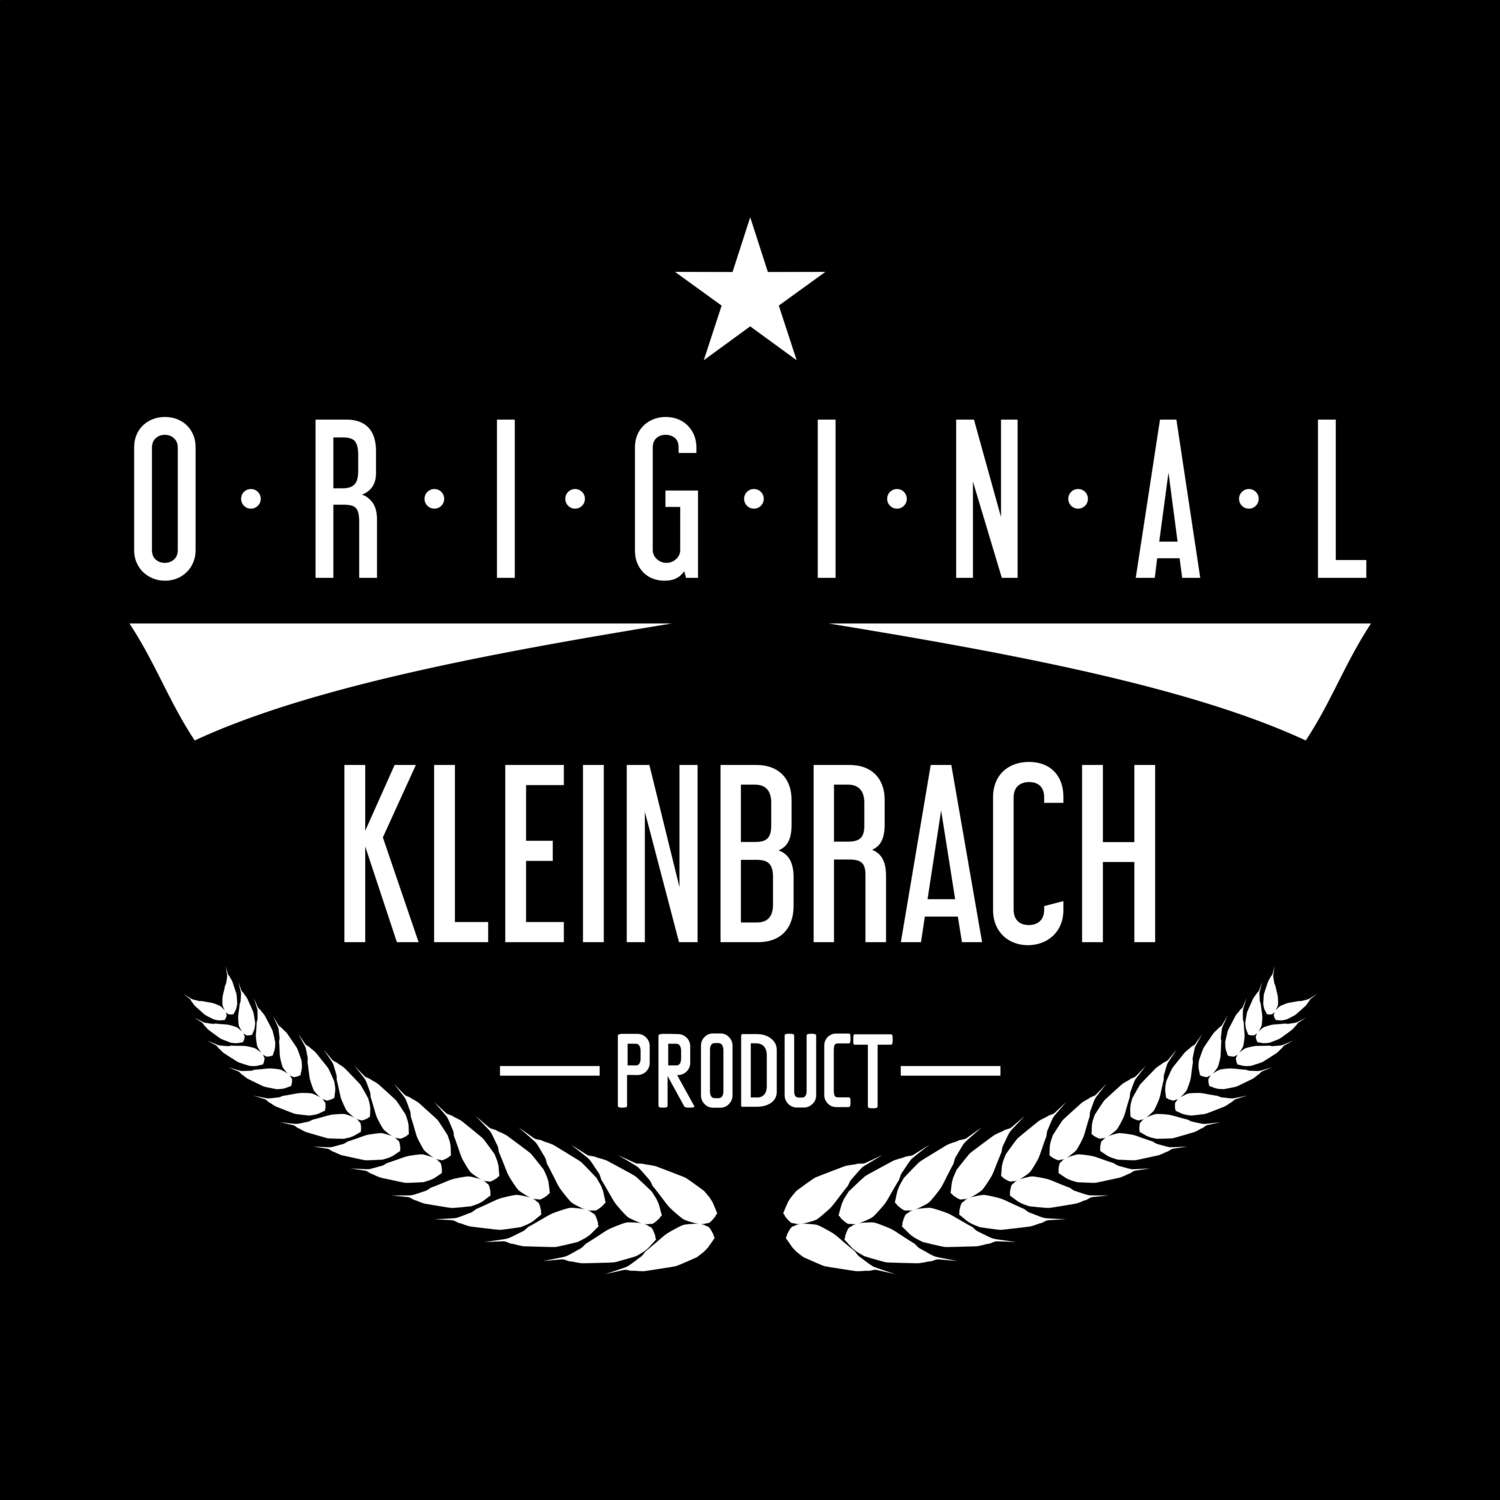 Kleinbrach T-Shirt »Original Product«